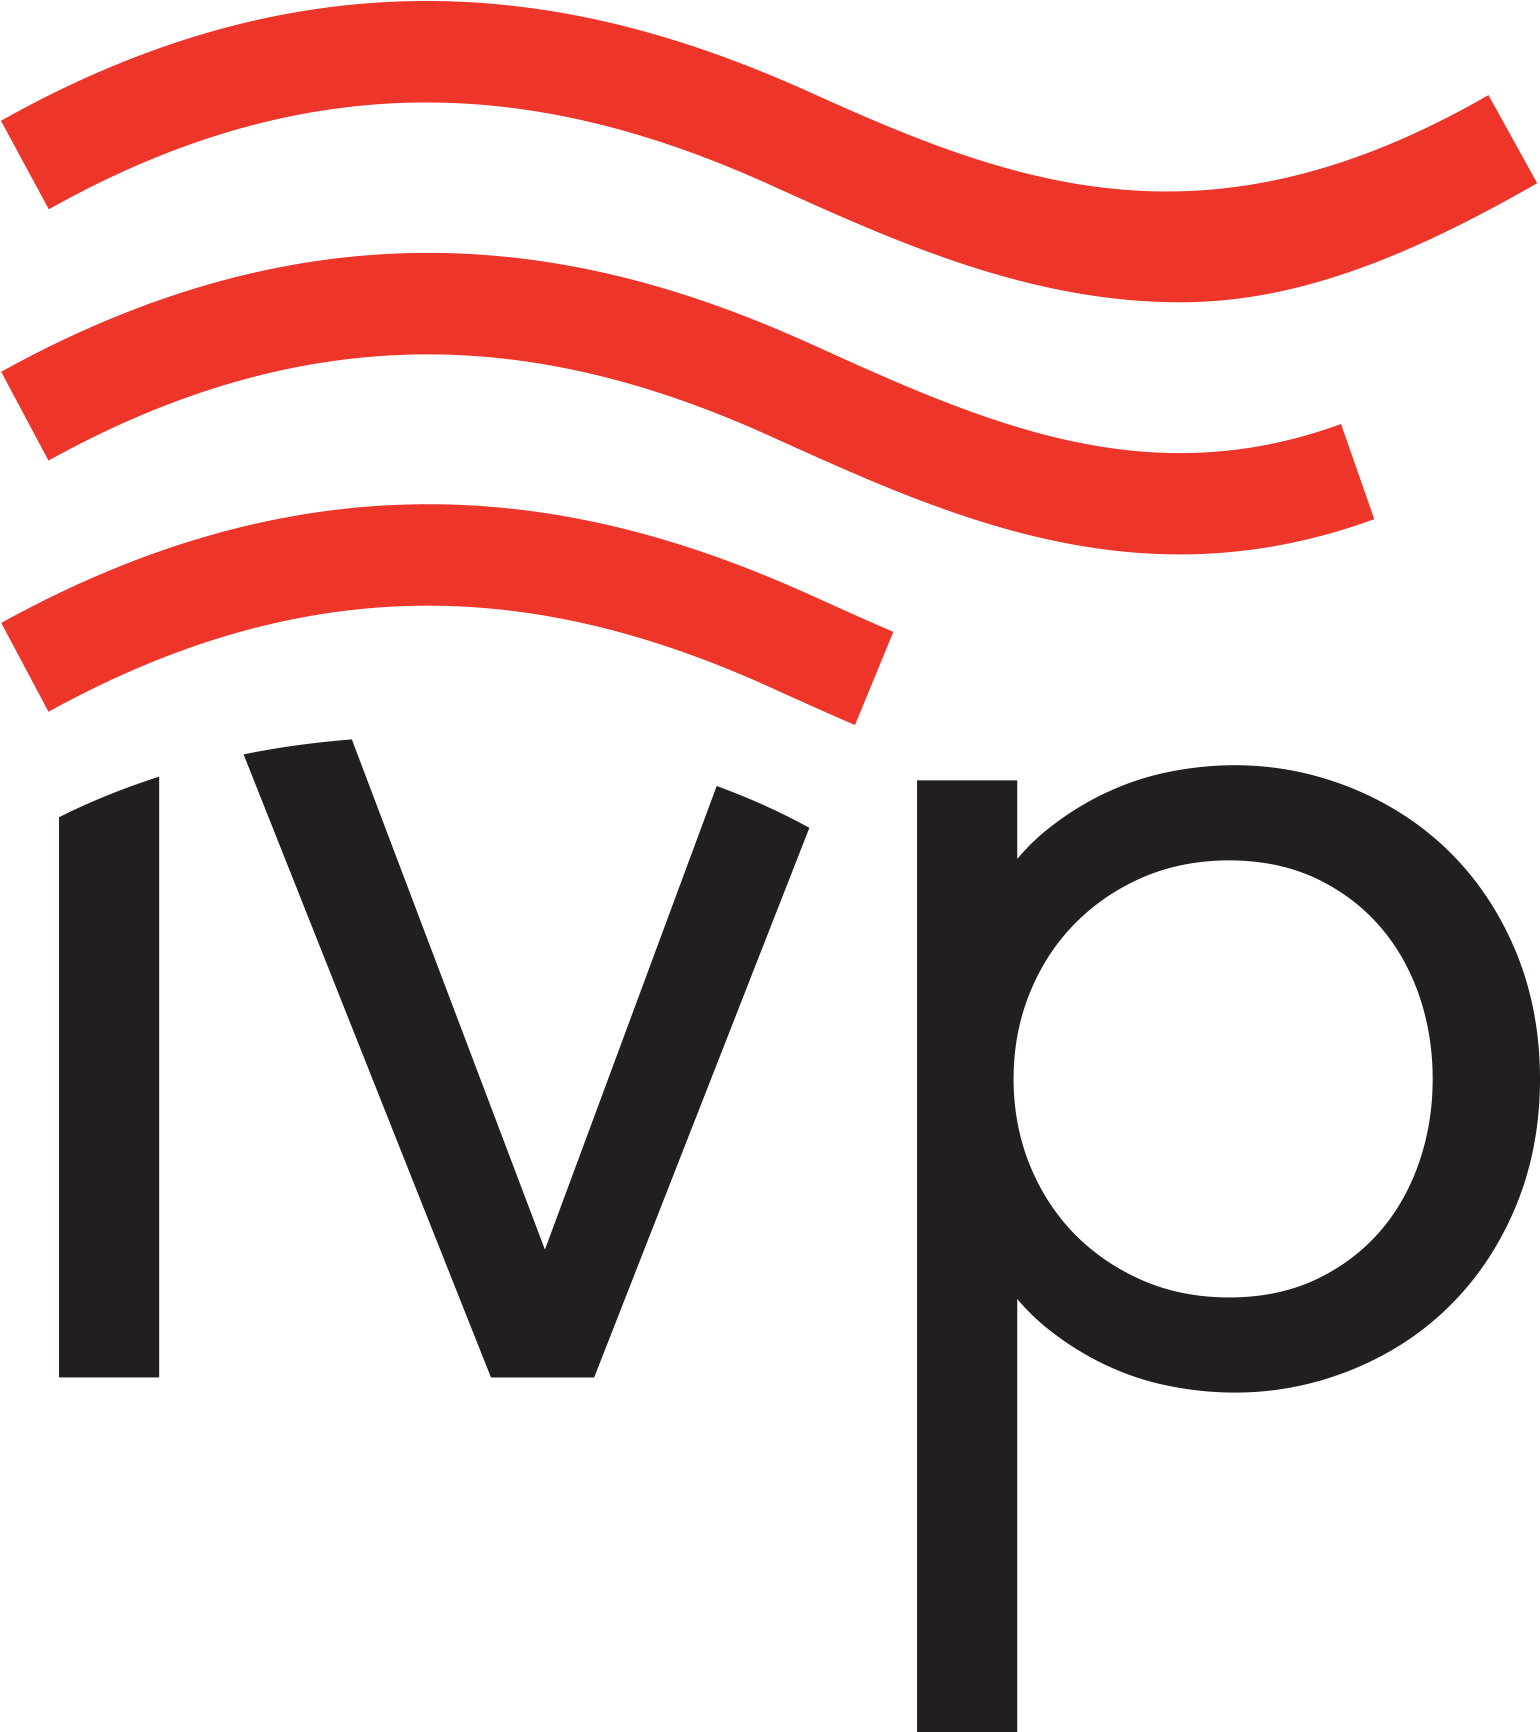 IVP logo